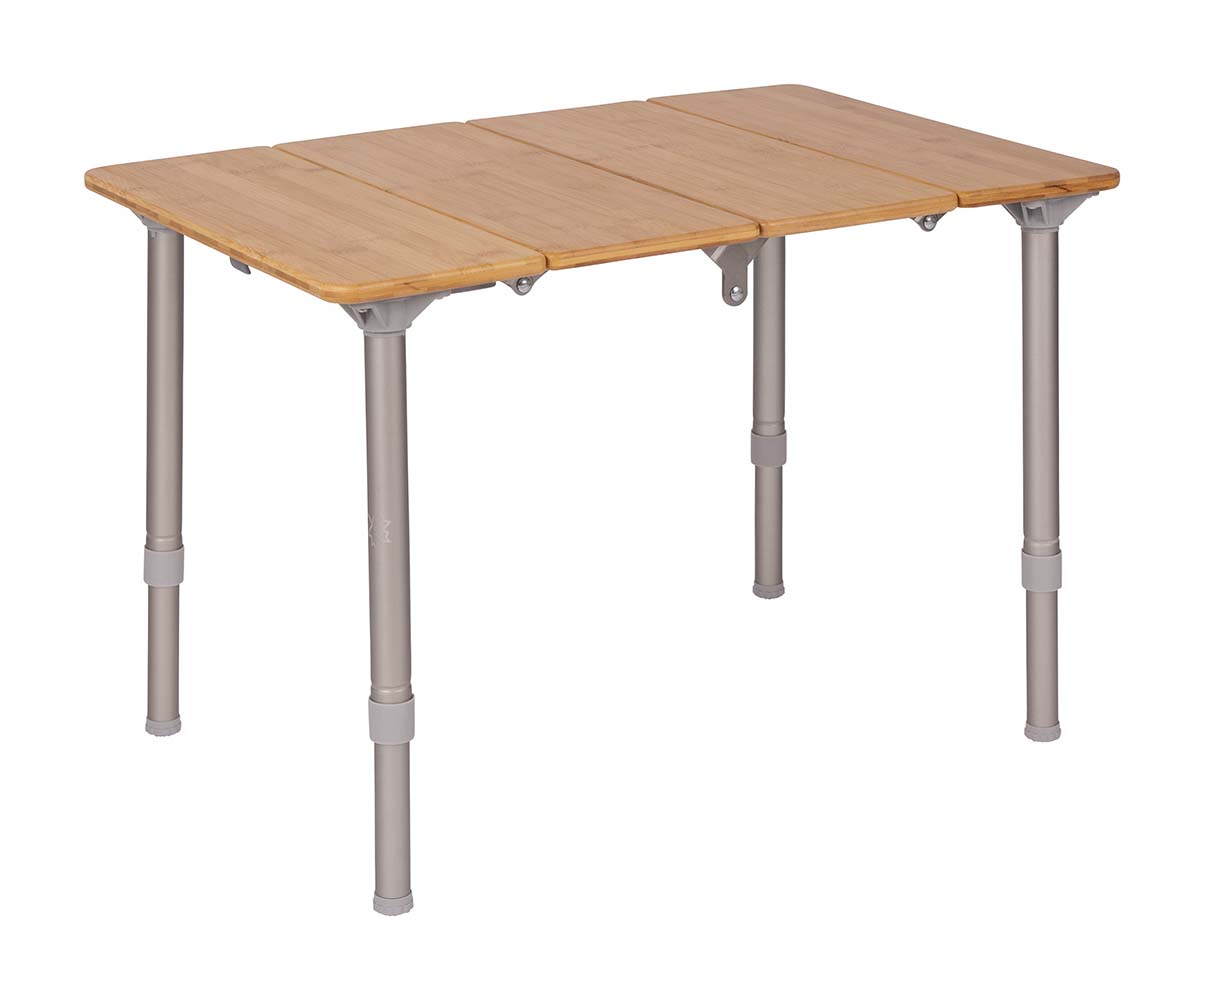 1404644 Una mesa muy lujosa y elegante. Esta mesa resistente al agua tiene una estructura de aluminio muy resistente con un grueso tablero de bambú. Tiene patas plegables y tablero de listones divisible. Plegando las 4 láminas de la mesa, la mesa se puede plegar y transportar de forma compacta. Las patas de la mesa de aluminio Air-Craft son regulables en altura. Configure en segundos. Viene en un práctico estuche de transporte.